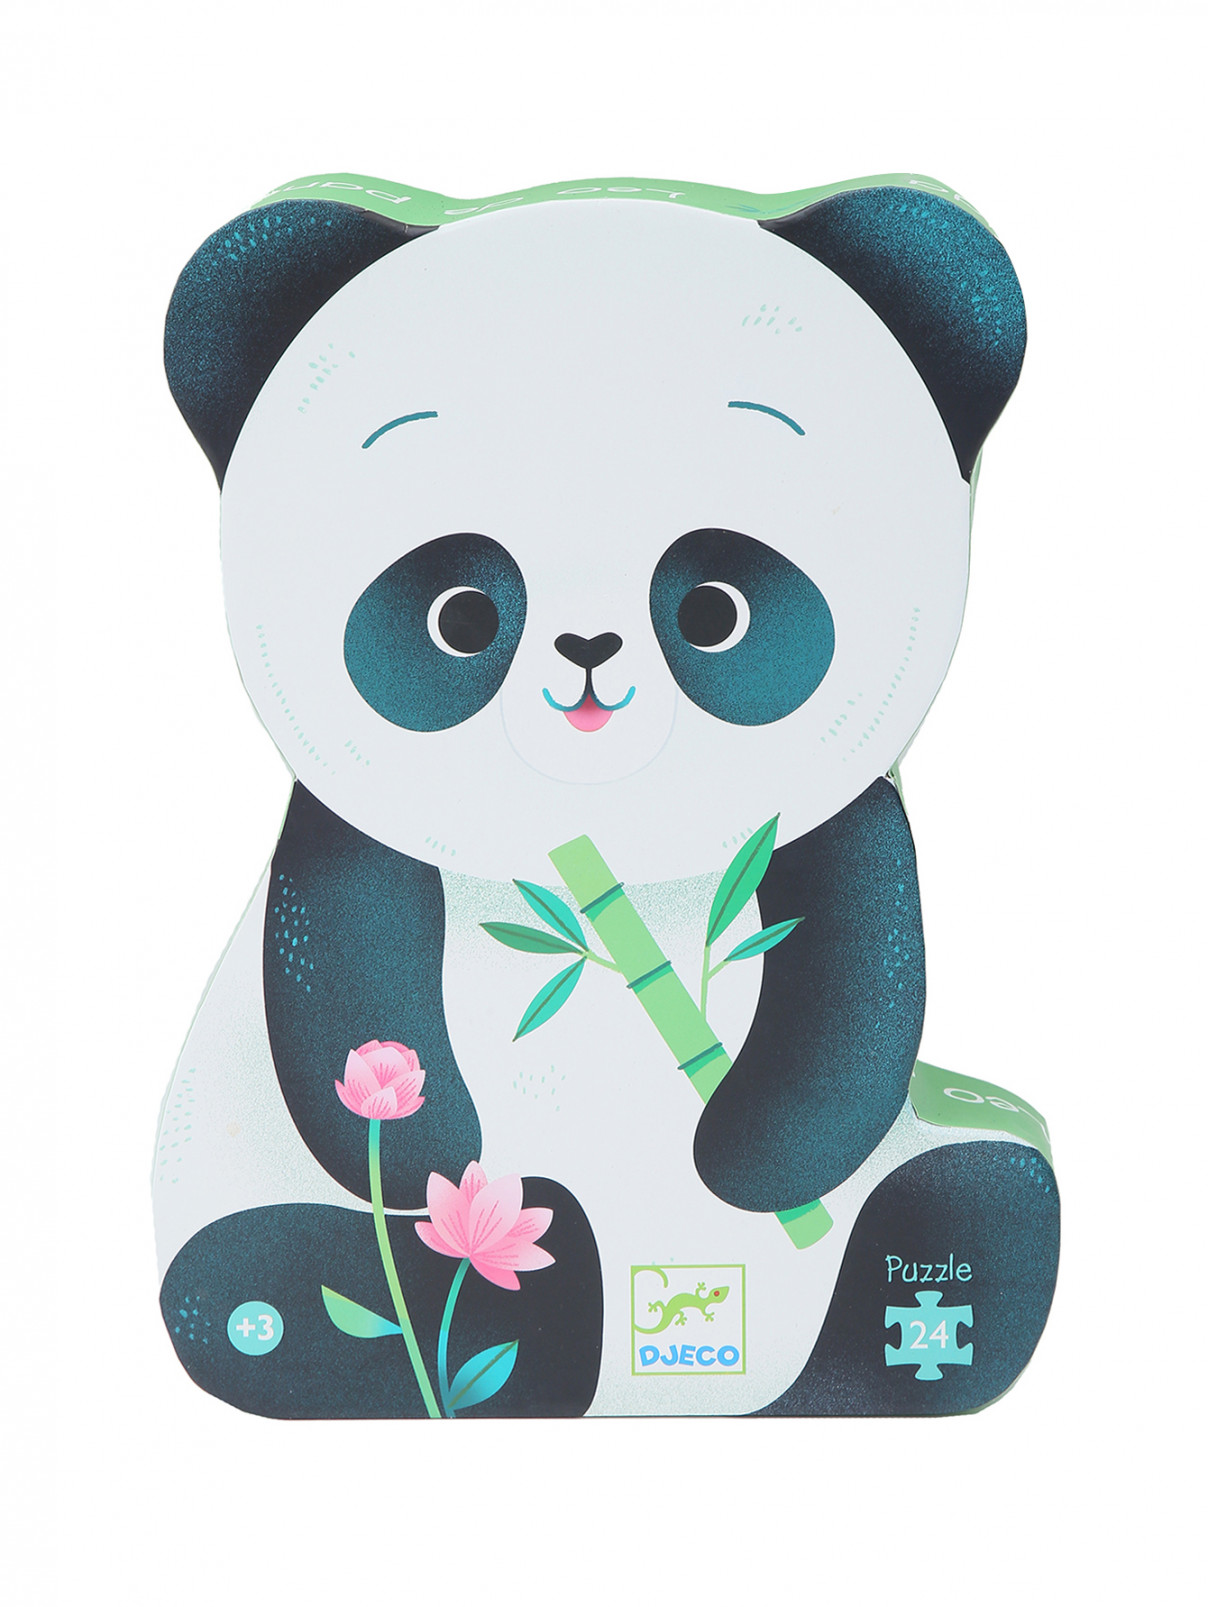 Пазл "Панда" Djeco  –  Общий вид  – Цвет:  Зеленый